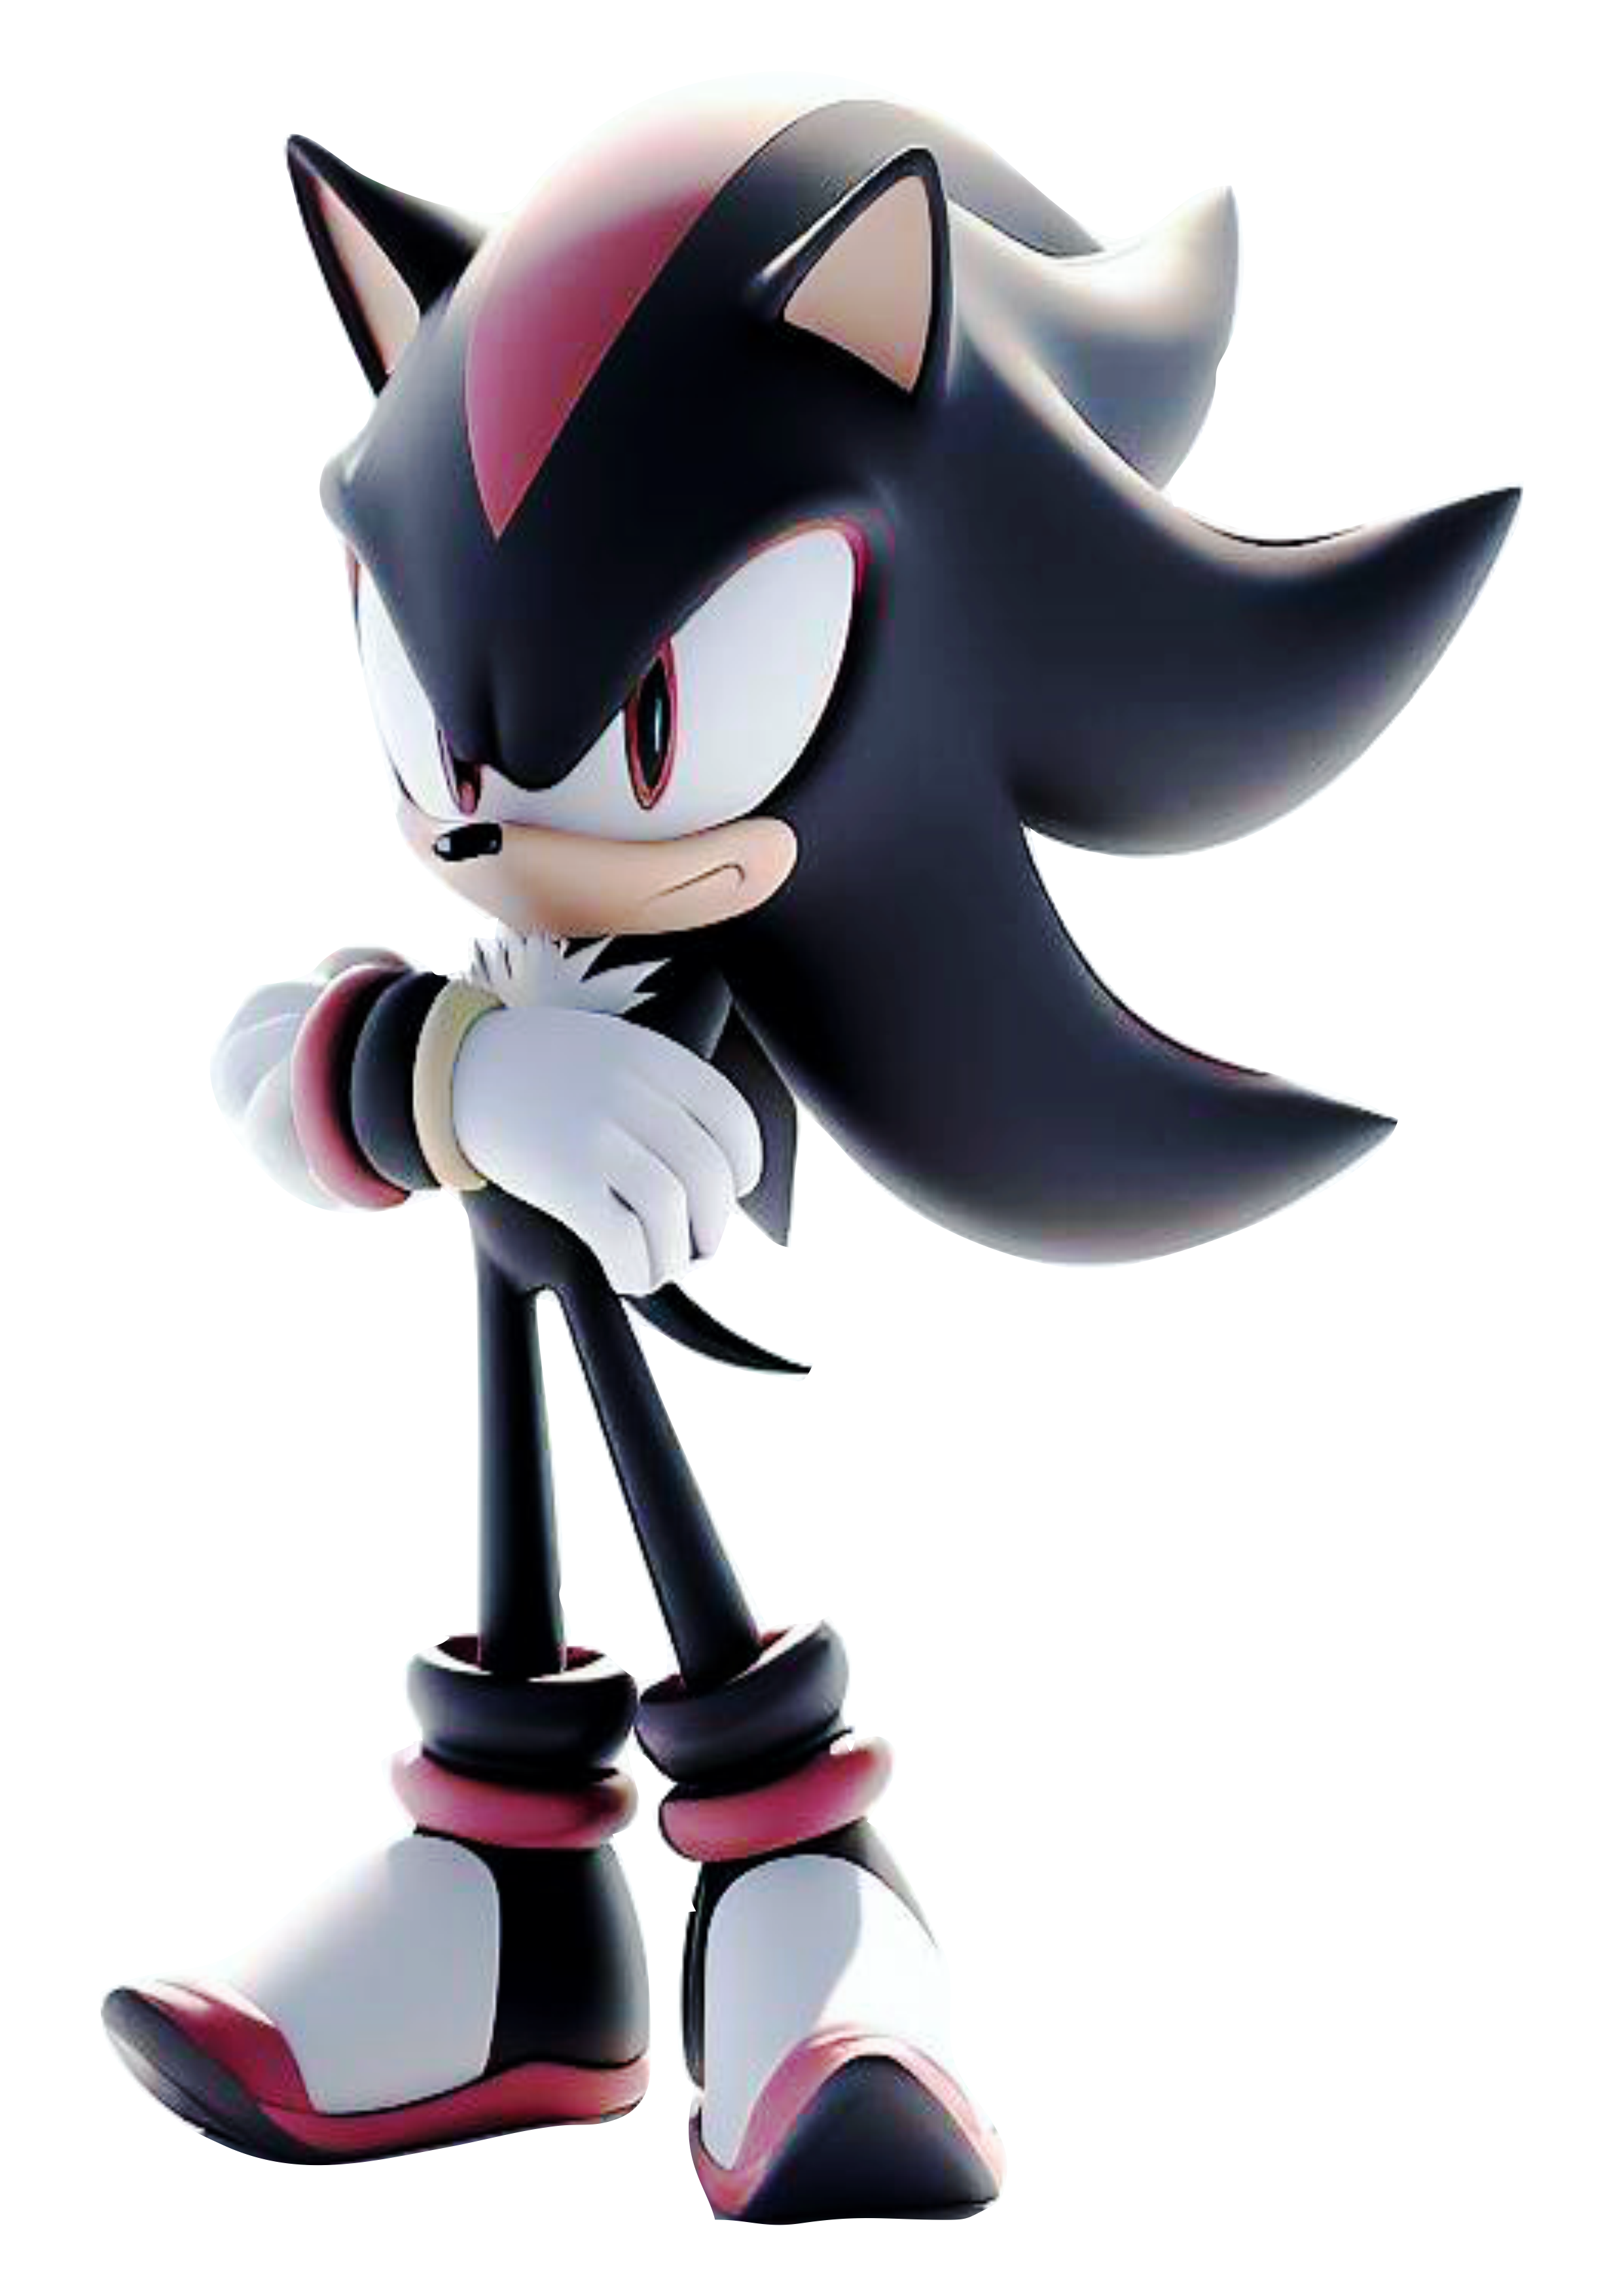 Shadows The Hedgehog Sonic personagem de games sega megadrive artes gráficas free download fundo transparente png